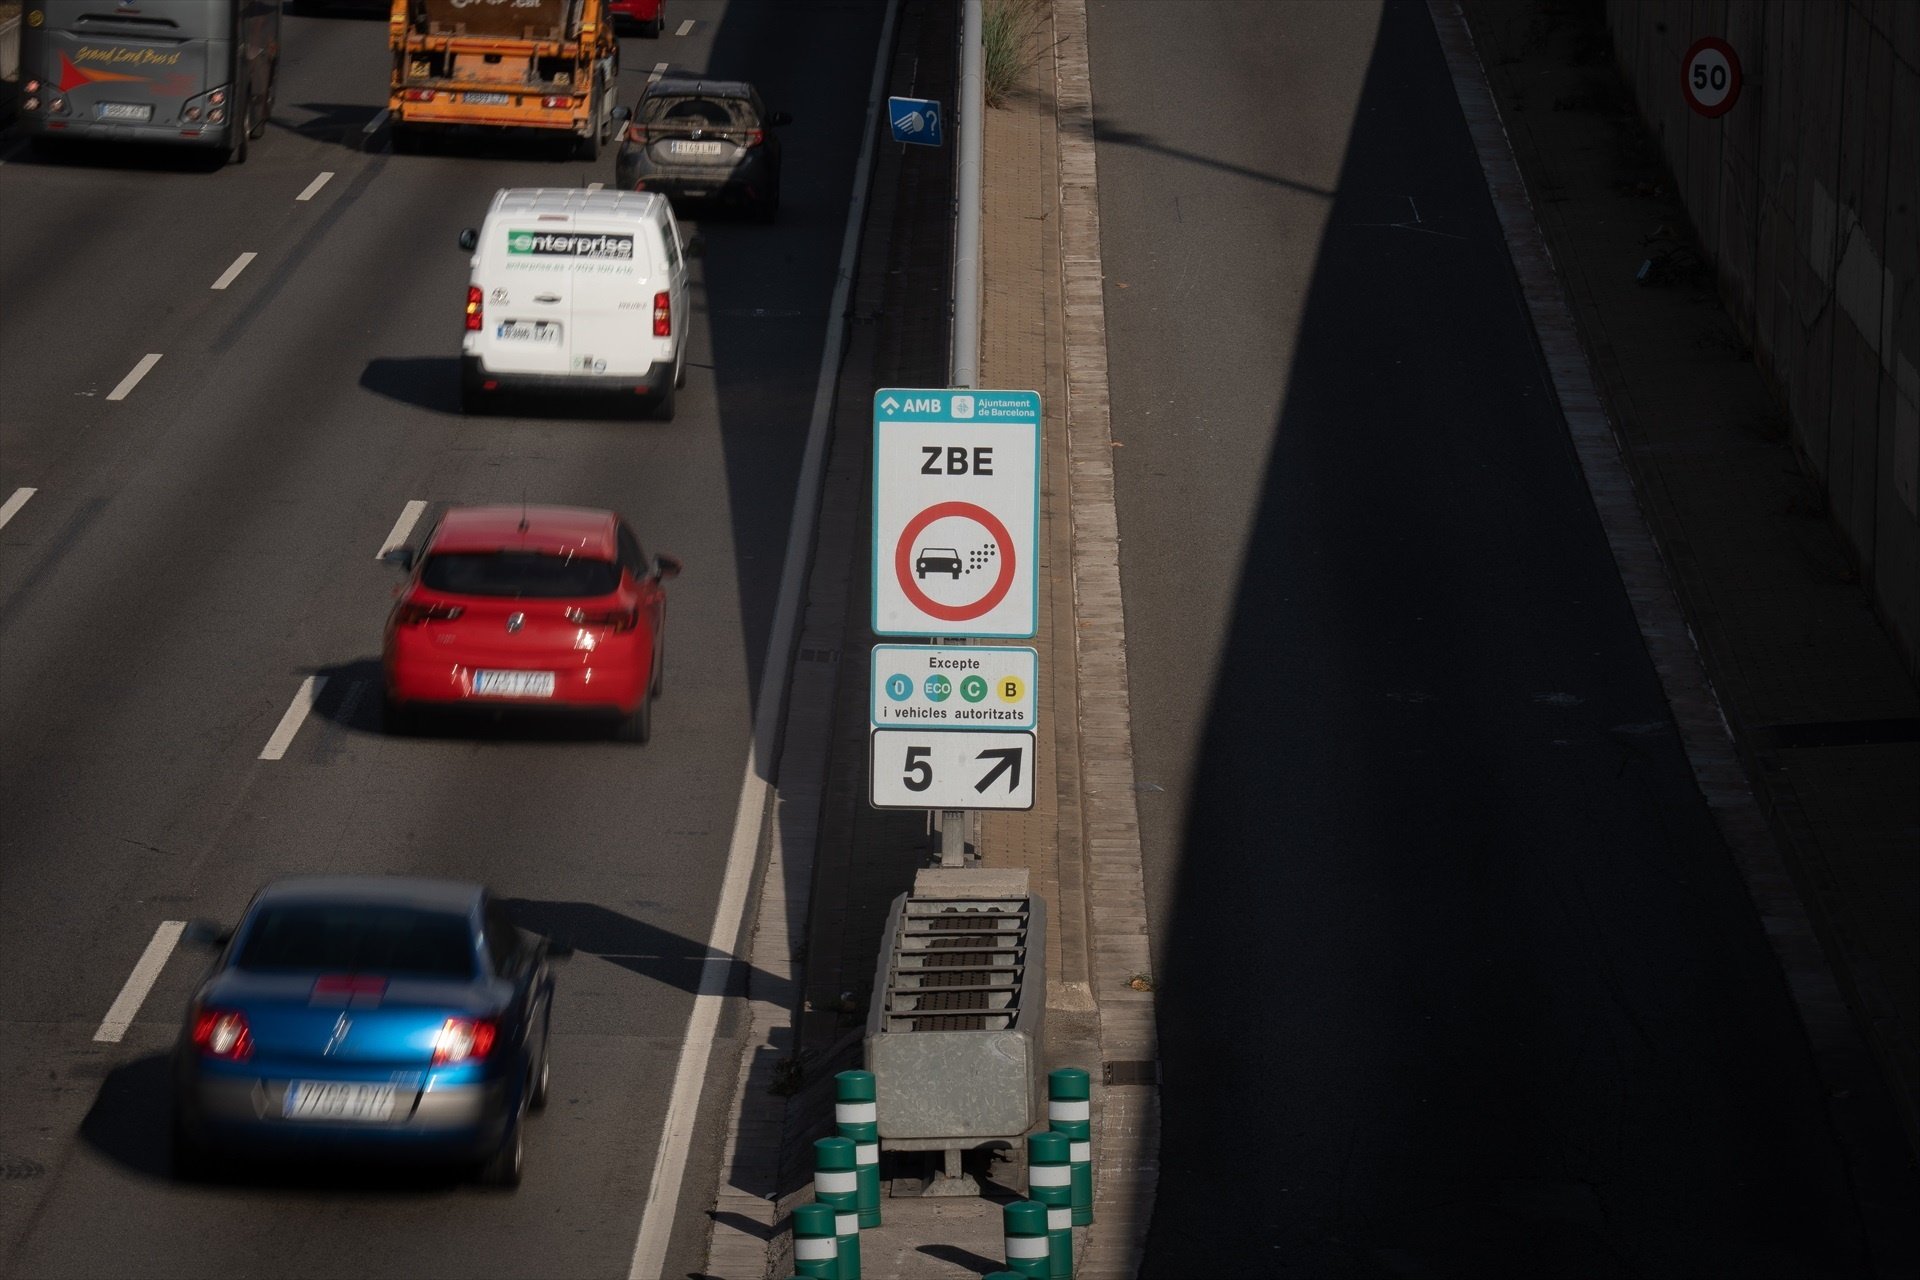 150.080 cotxes de segona mà venuts durant el primer trimestre a Espanya no poden entrar a les ZBE